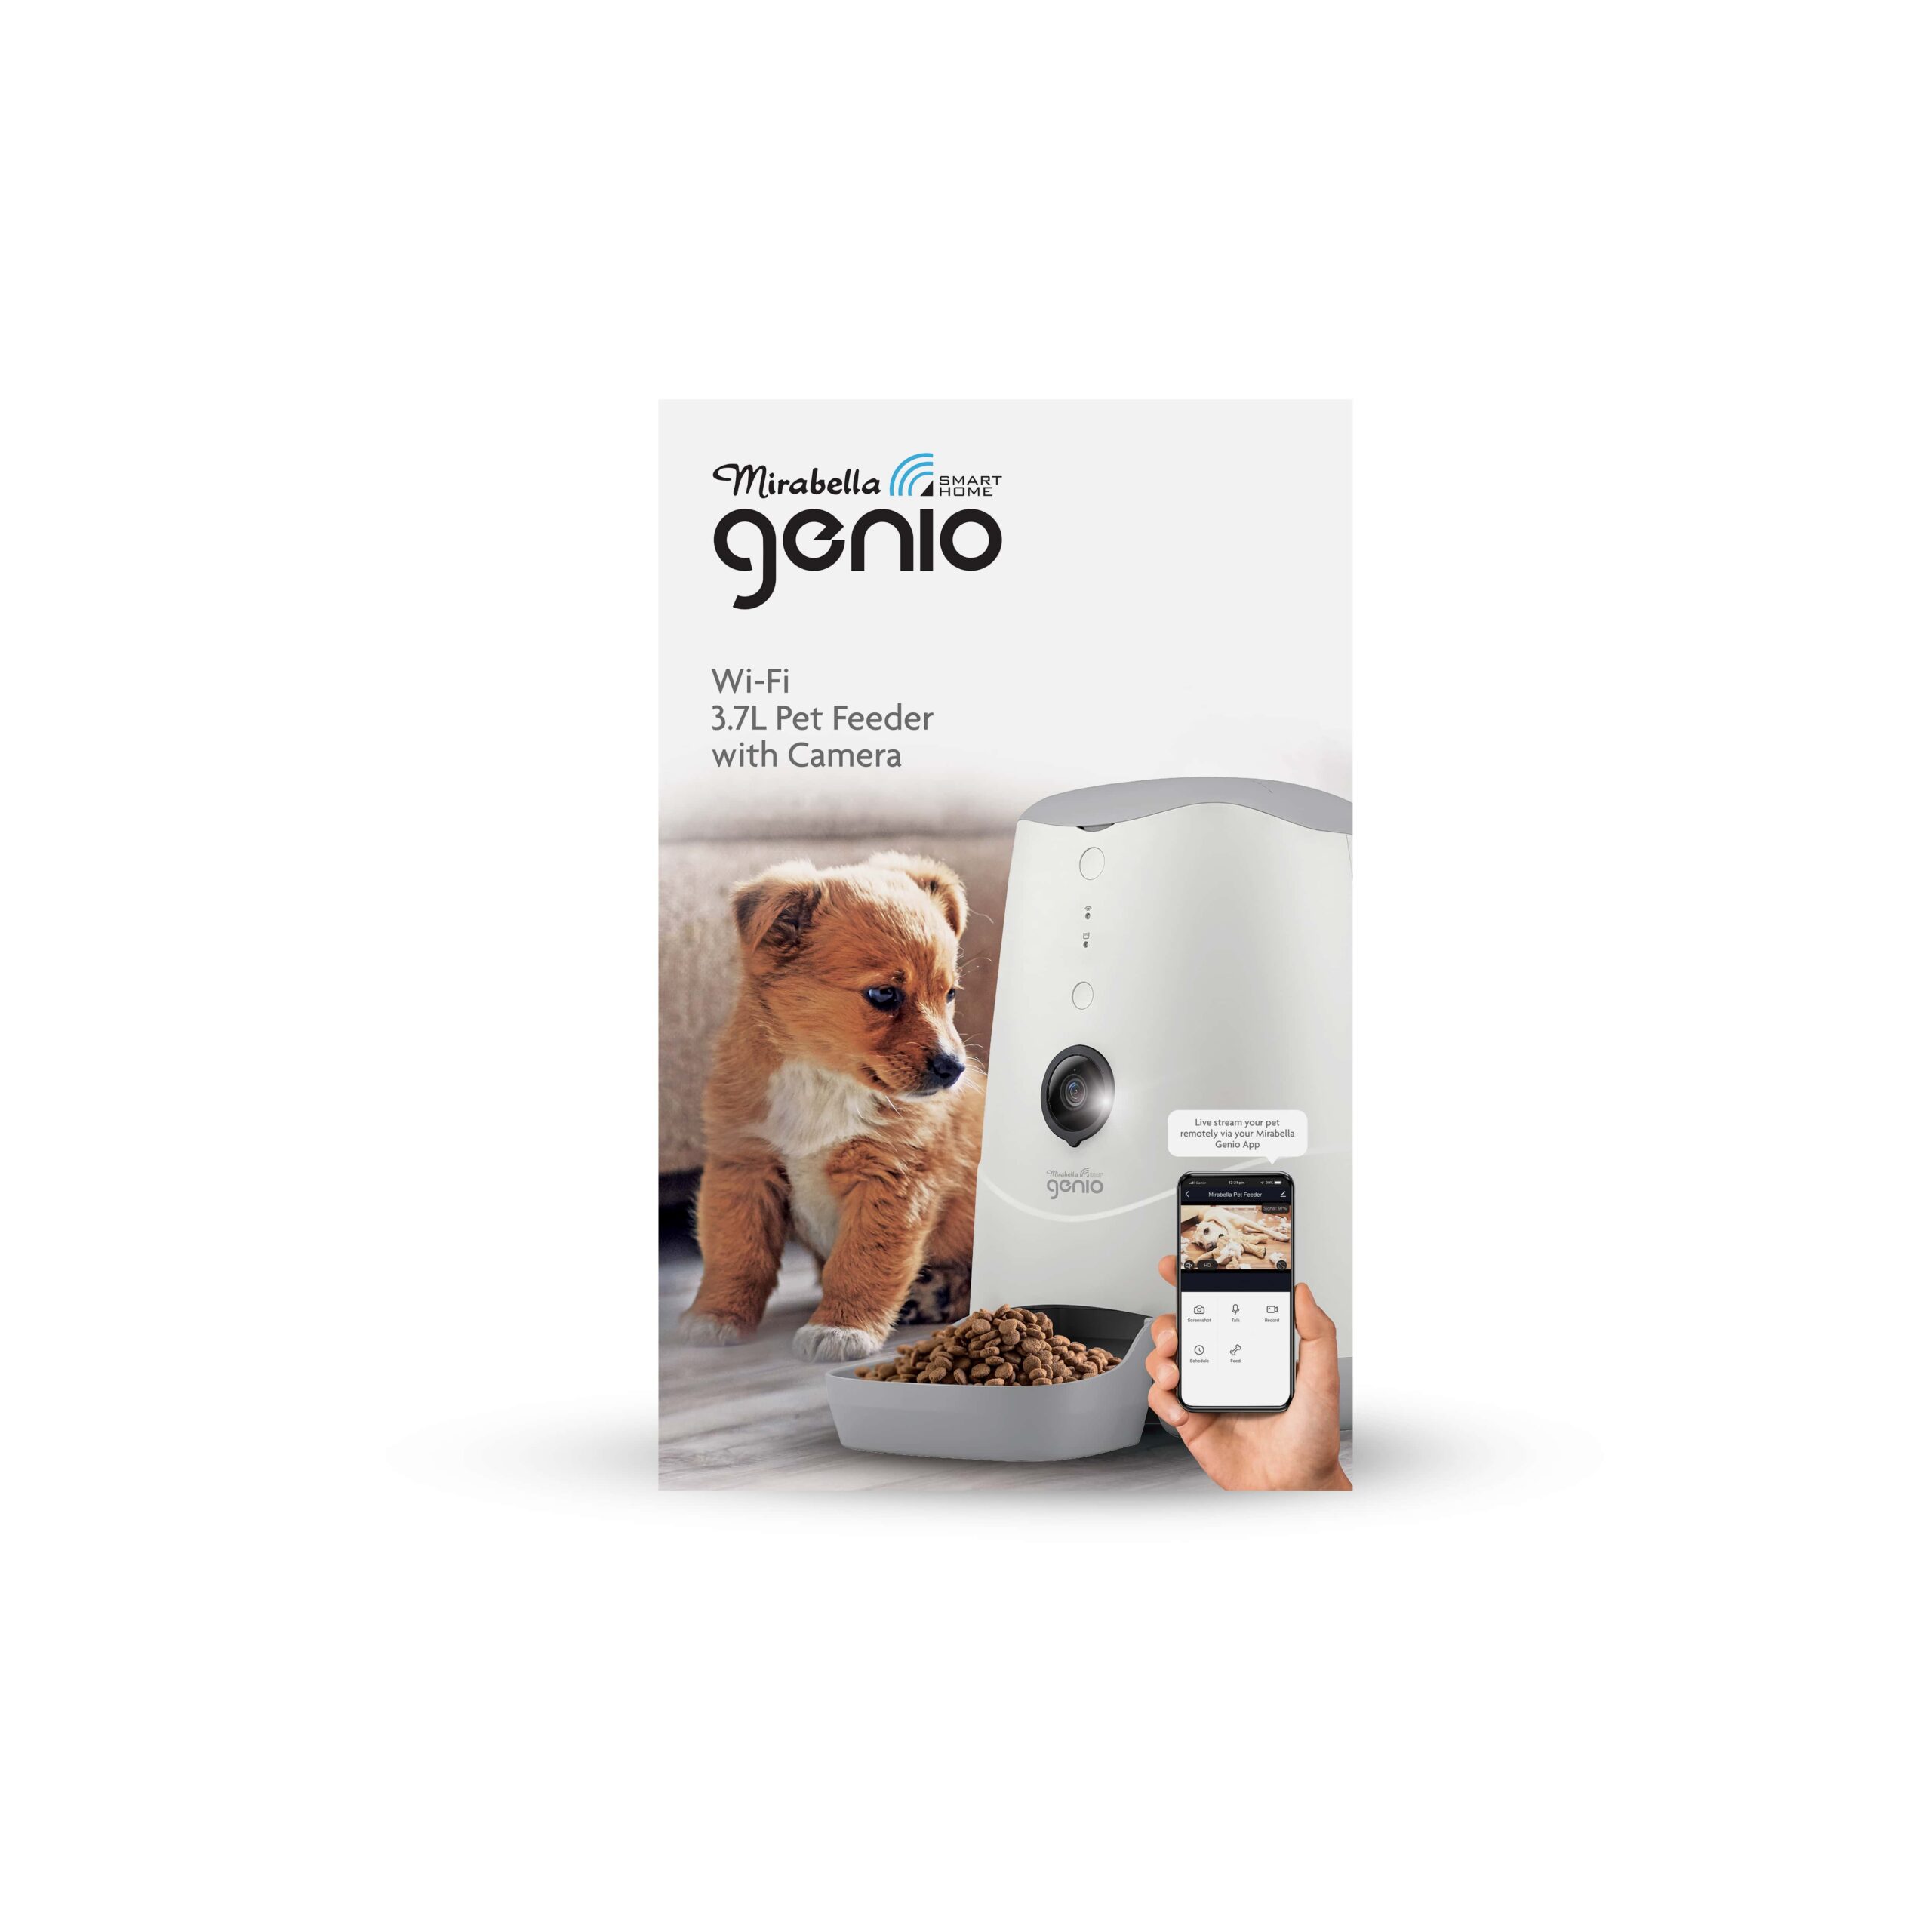 Mirabella Genio Wi-Fi  Pet Feeder with Camera - Mirabella Genio - Smart  Home